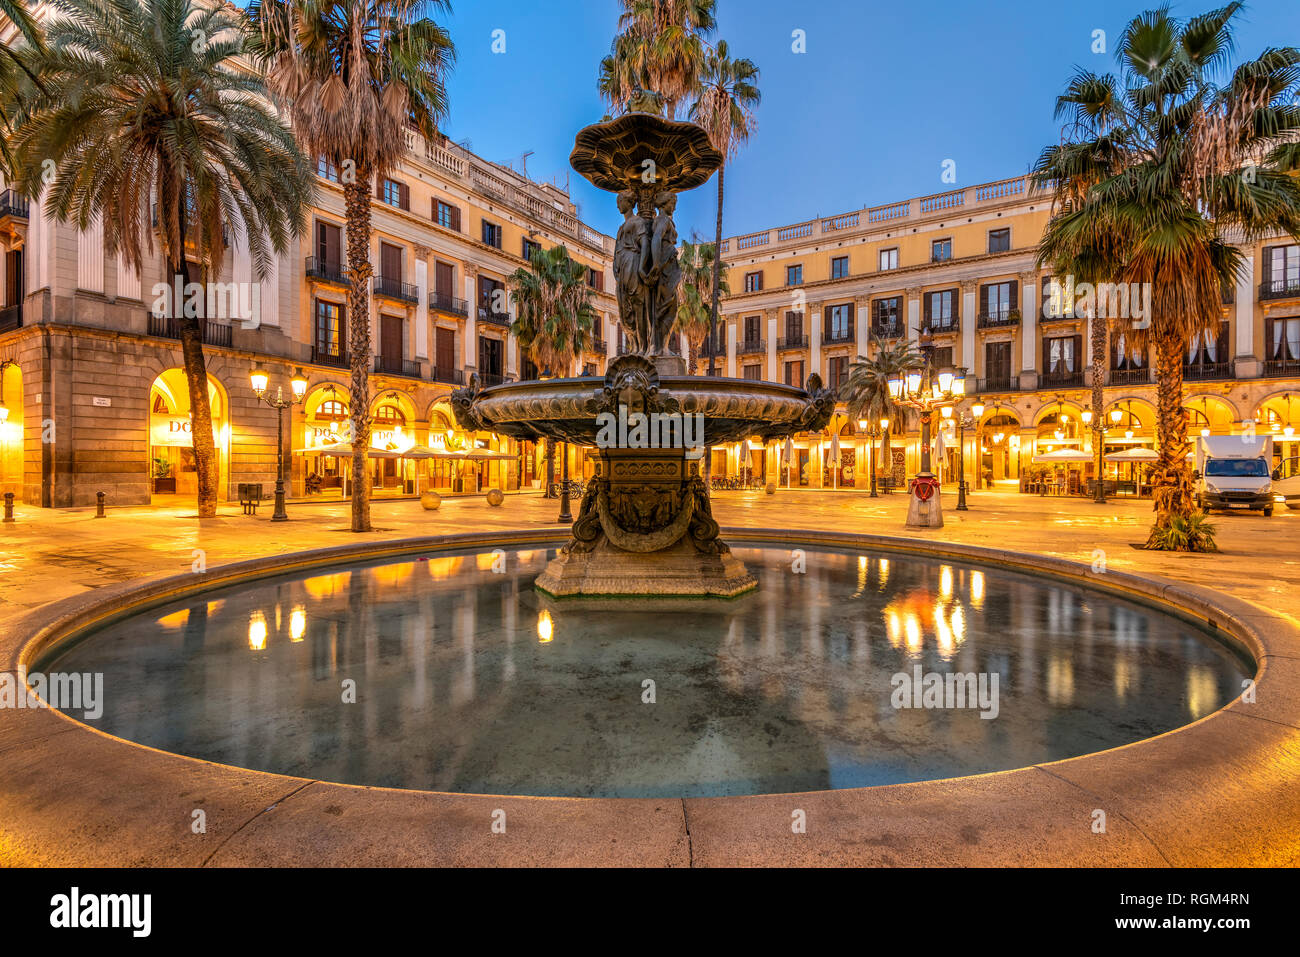 Vue nocturne de la place Plaça Reial ou la Place Royale dans le quartier gothique, Barcelone, Catalogne, Espagne Banque D'Images